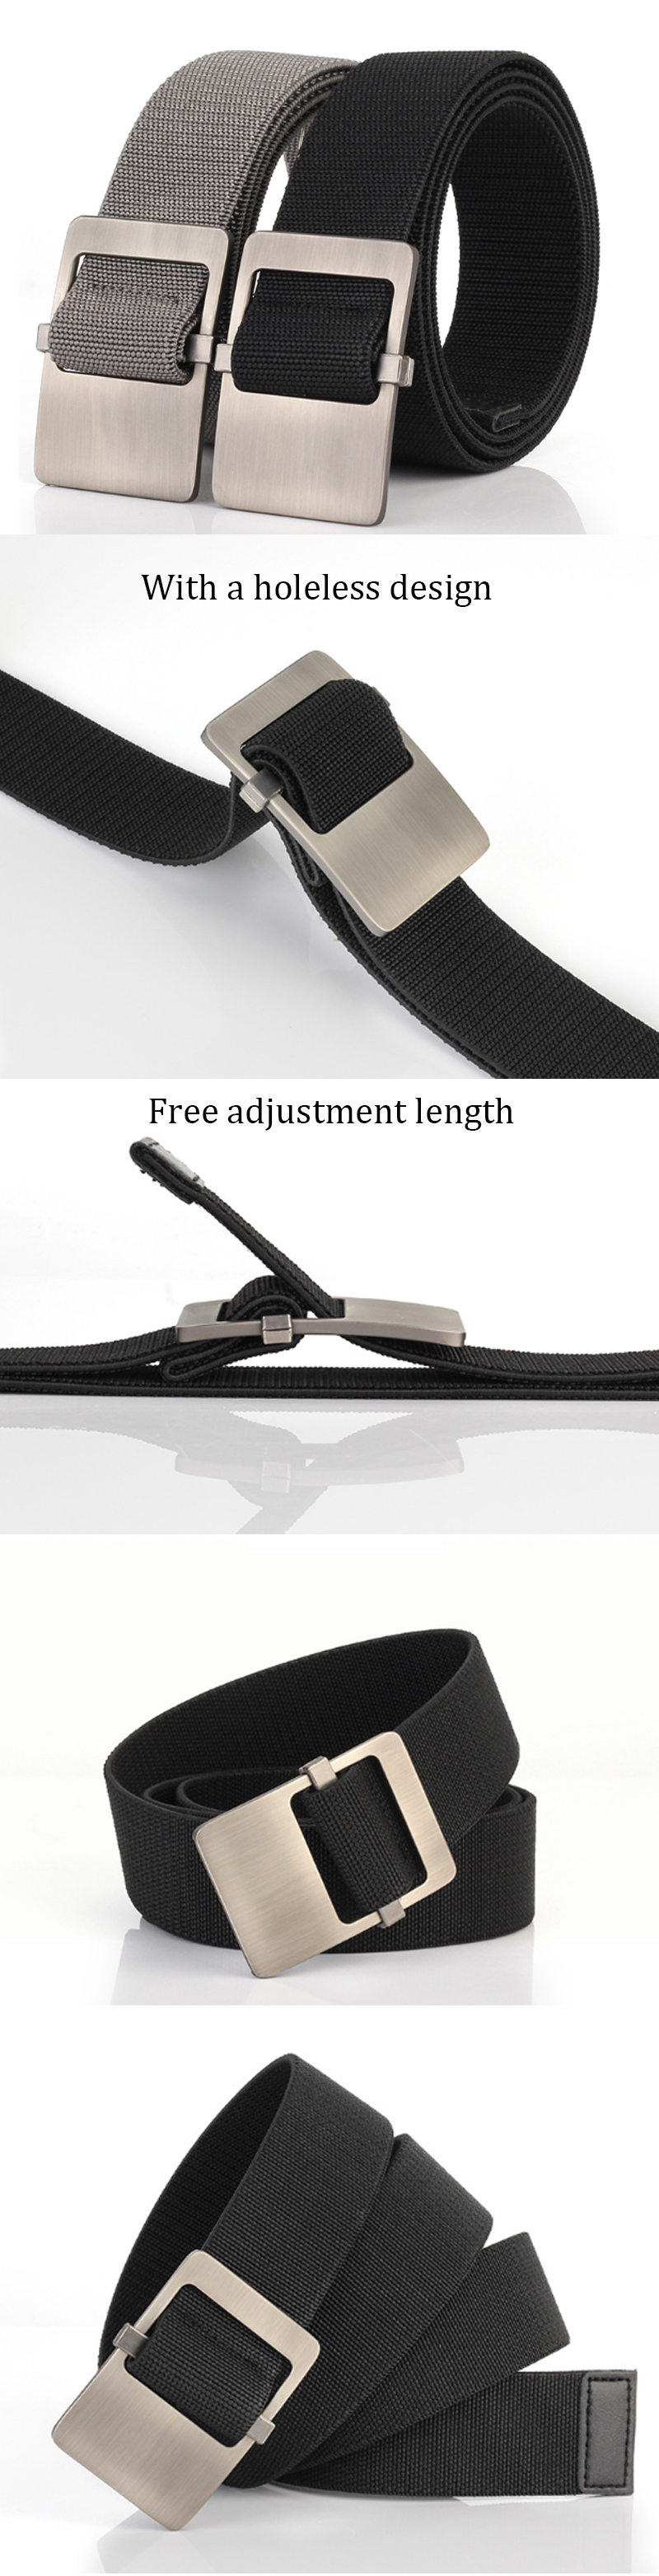 125cm-x-38cm-AMWN-Tactical-Belt-Lightweight-Nylon-Belt-Adjustable-Waistband-Waist-Belts-For-Man-Woma-1442705-1